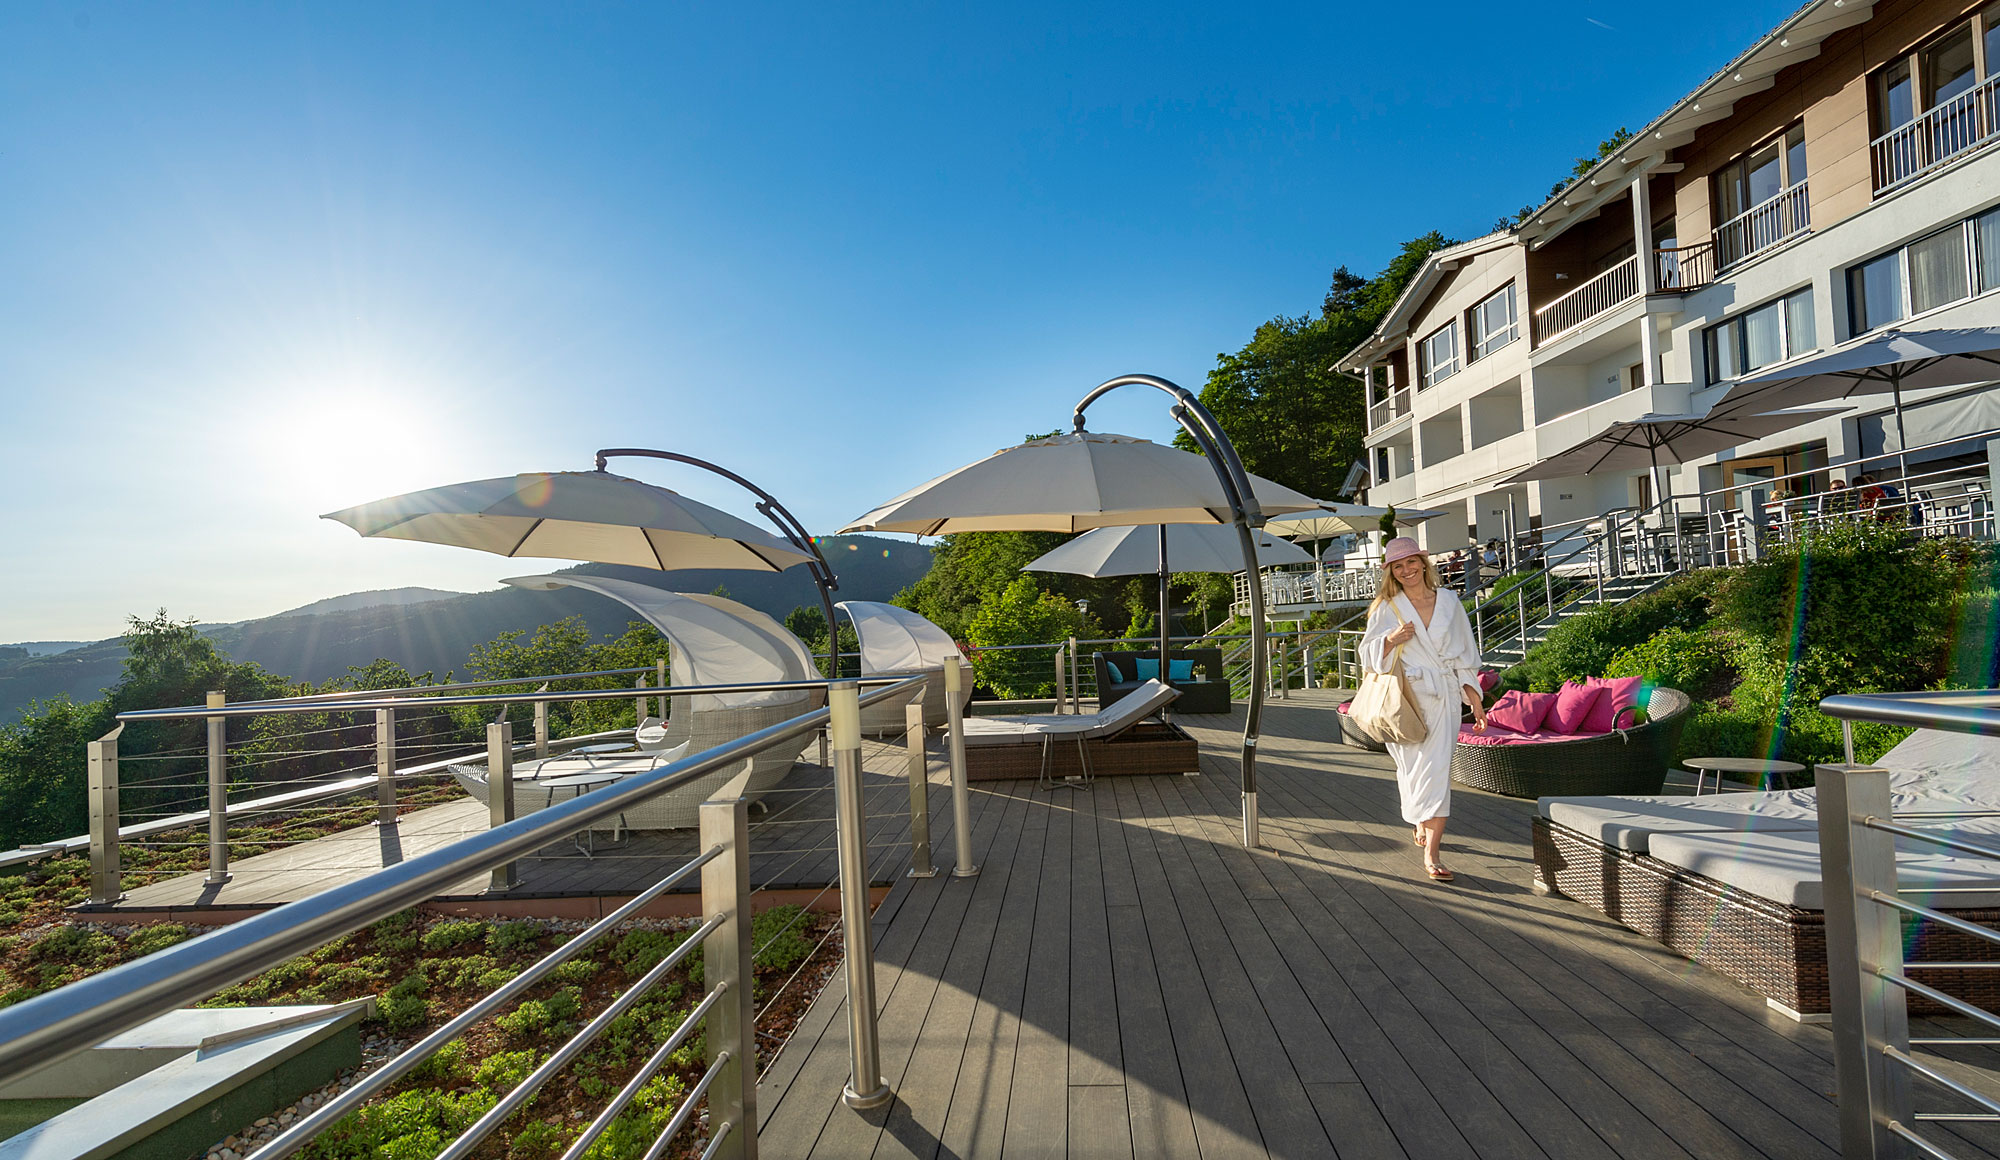 Terrasse mit Liegen 4 Sterne Hotel in Bayern